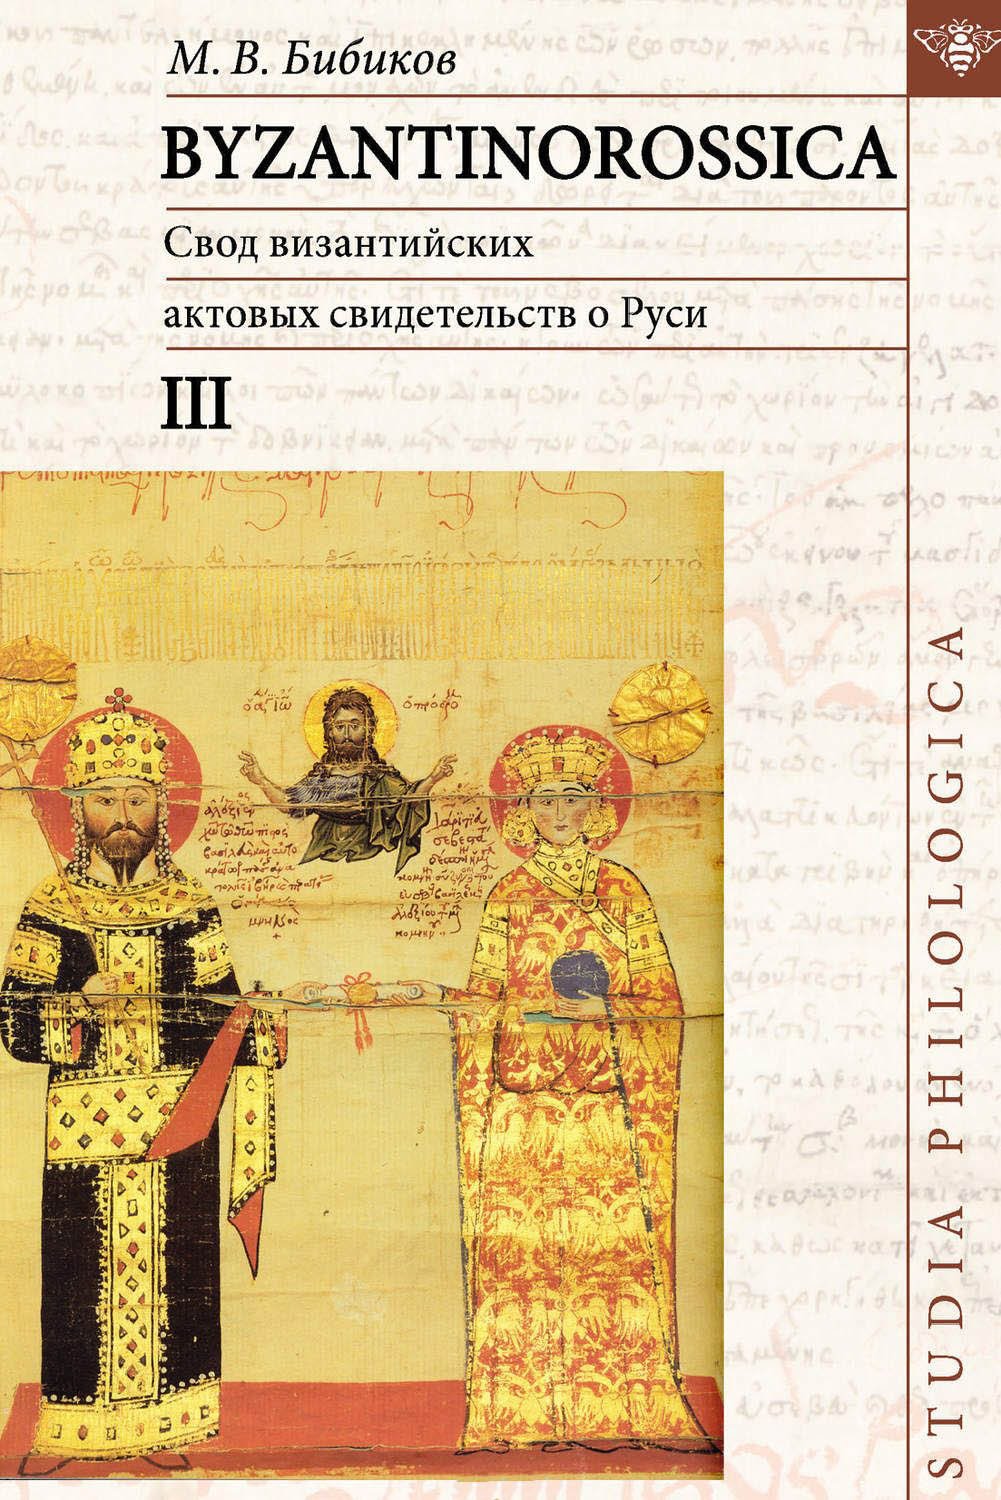 Свод византийских актовых свидетельств о Руси. Том III. BYZANTINOROSSICA